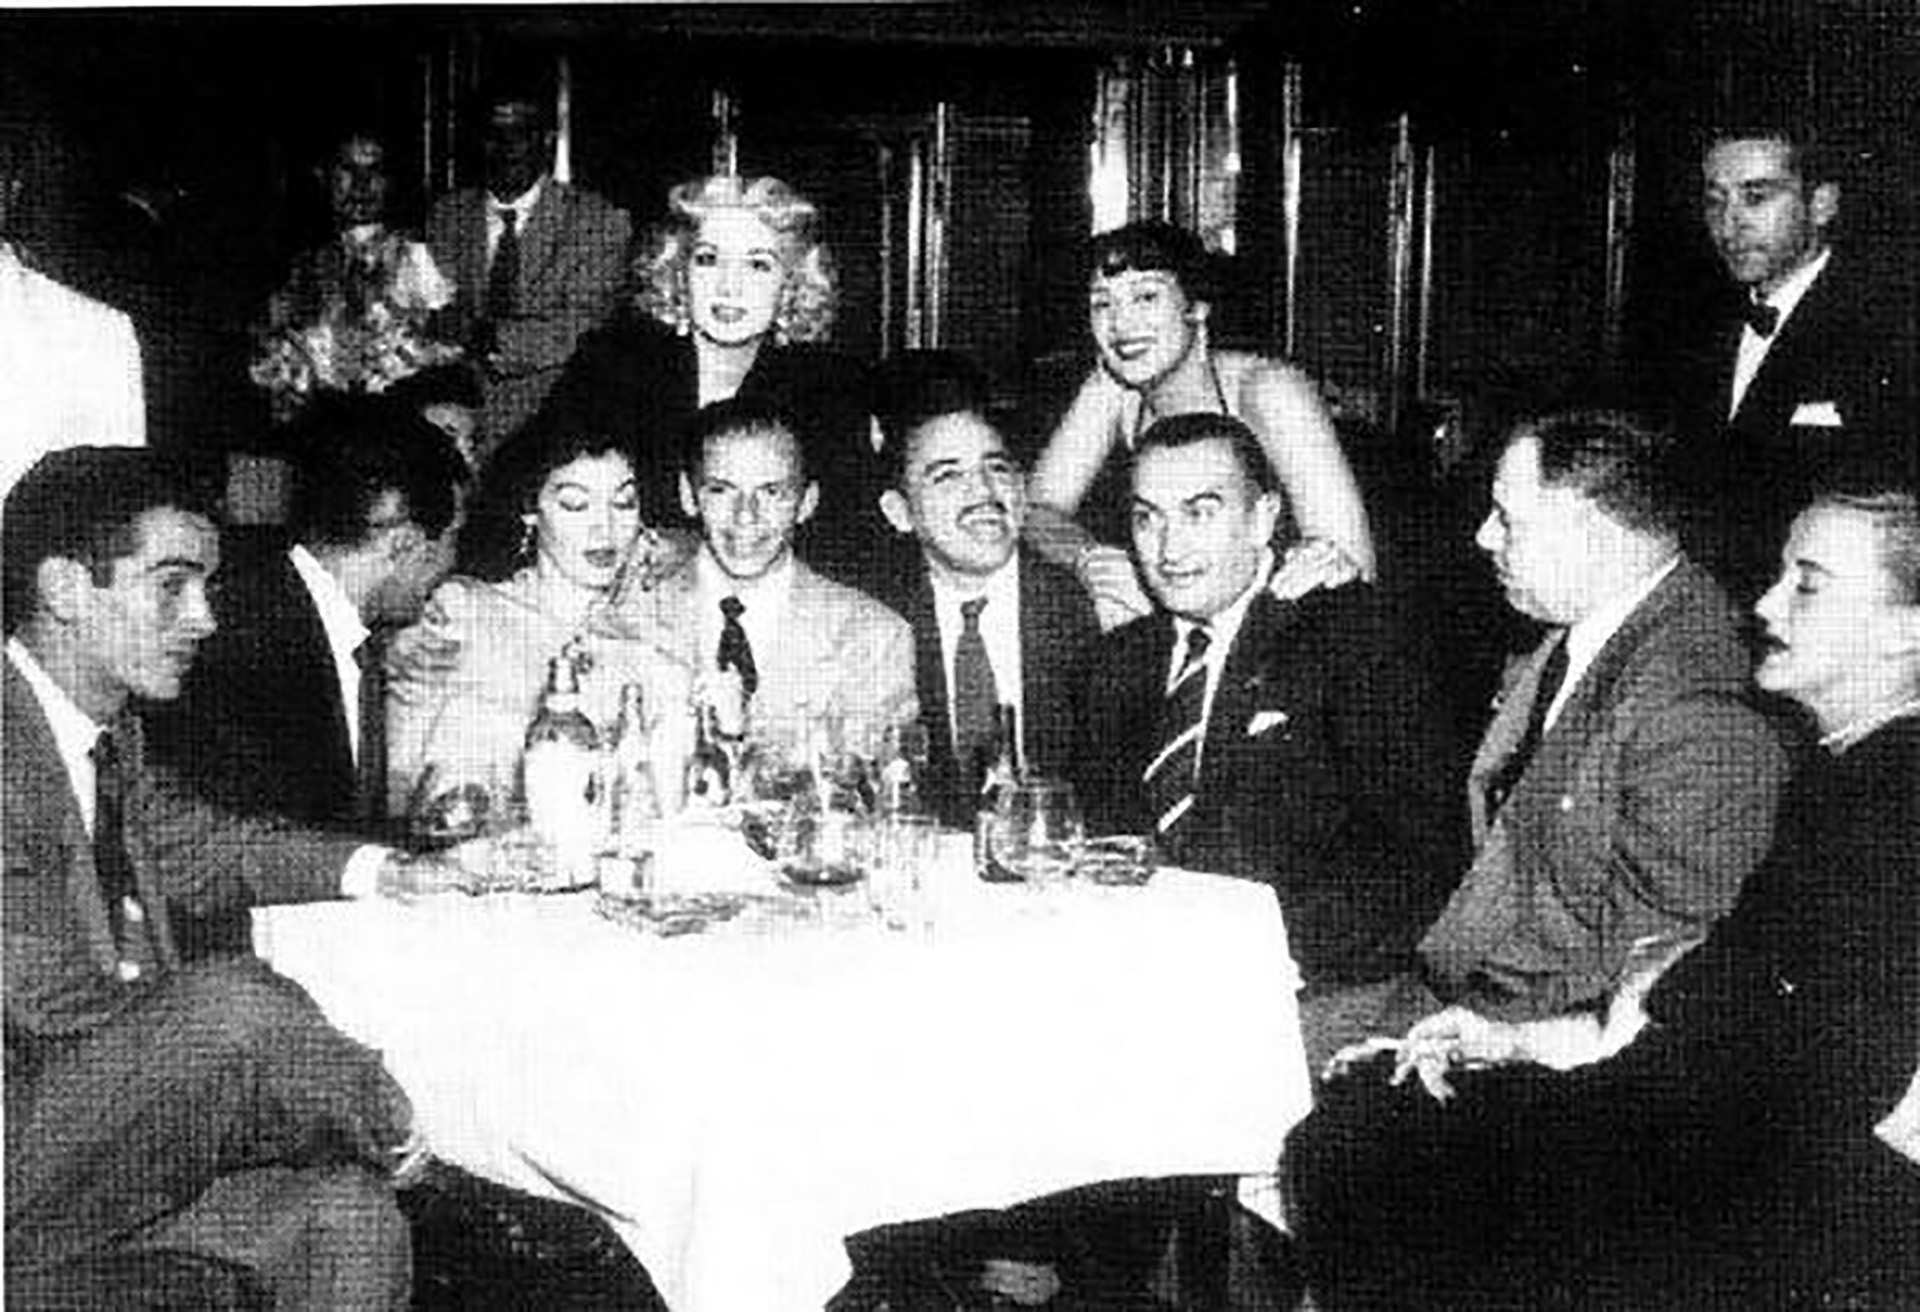 Sinatra en México en los años 50, acompañado de un grupo de amigos mexicanos.